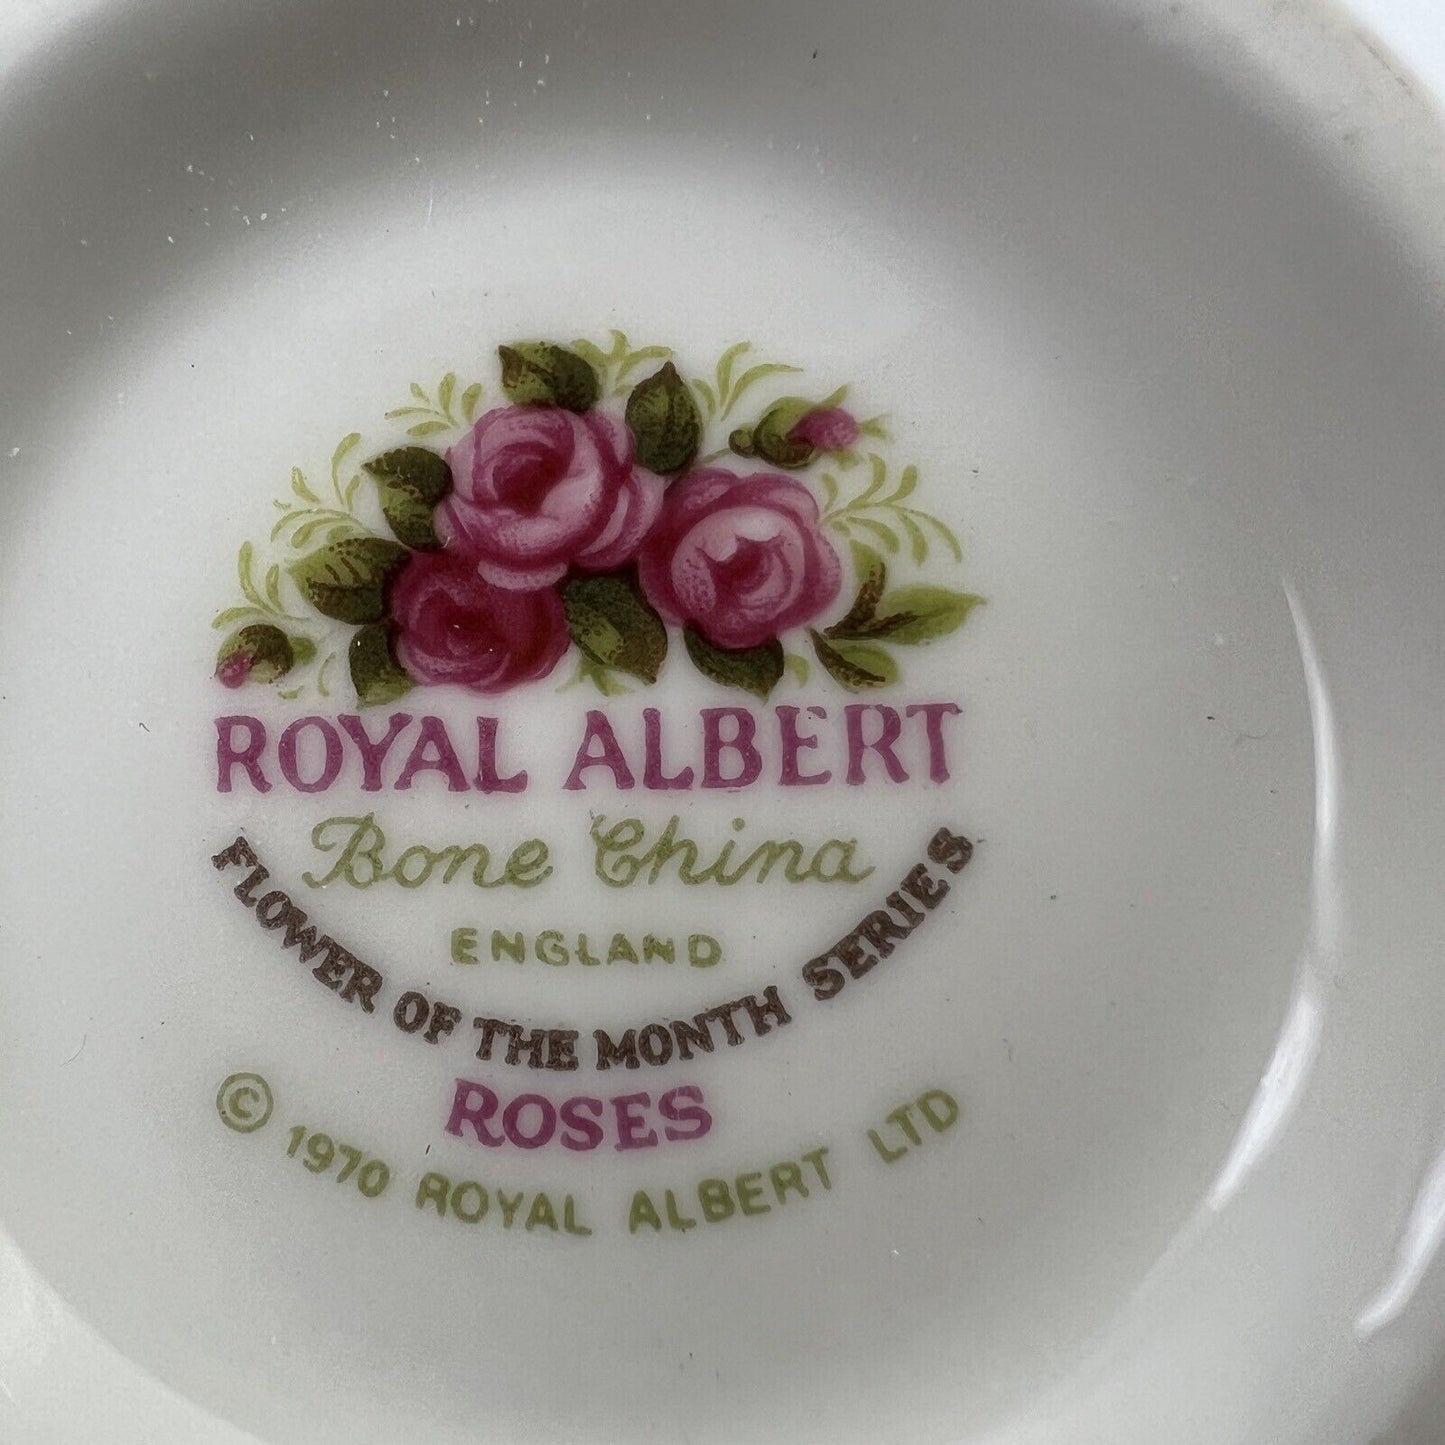 Tazza da tè The in porcellana Royal Albert con mese tazzina inglese GIUGNO 1970